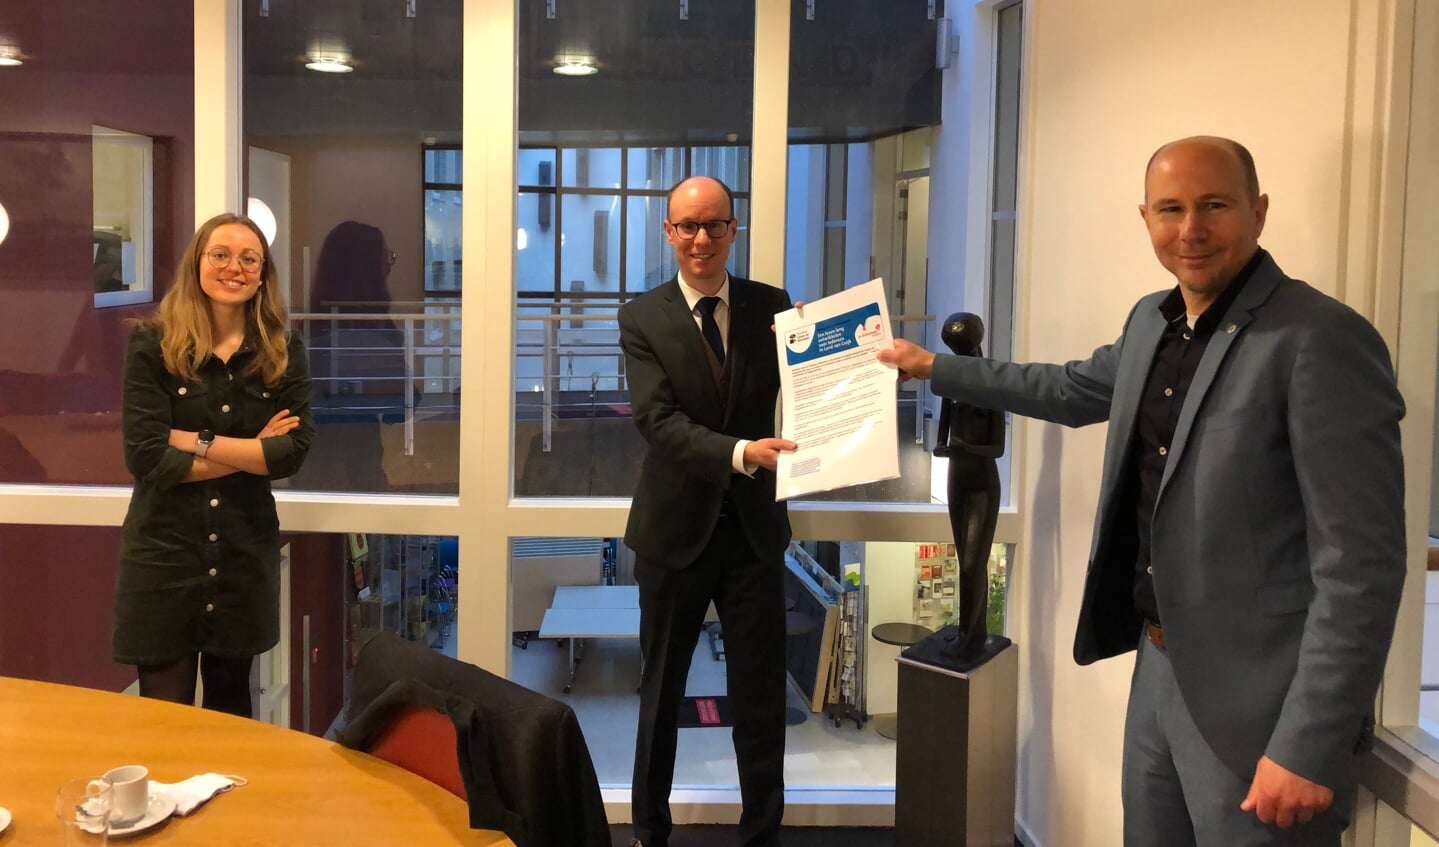 Cyril Crutz (BiblioPlus) en Silke Walraven (Stichting Lezen & Schrijven) hebben het manifest uitgereikt aan wethouder Joost Hendriks (midden).